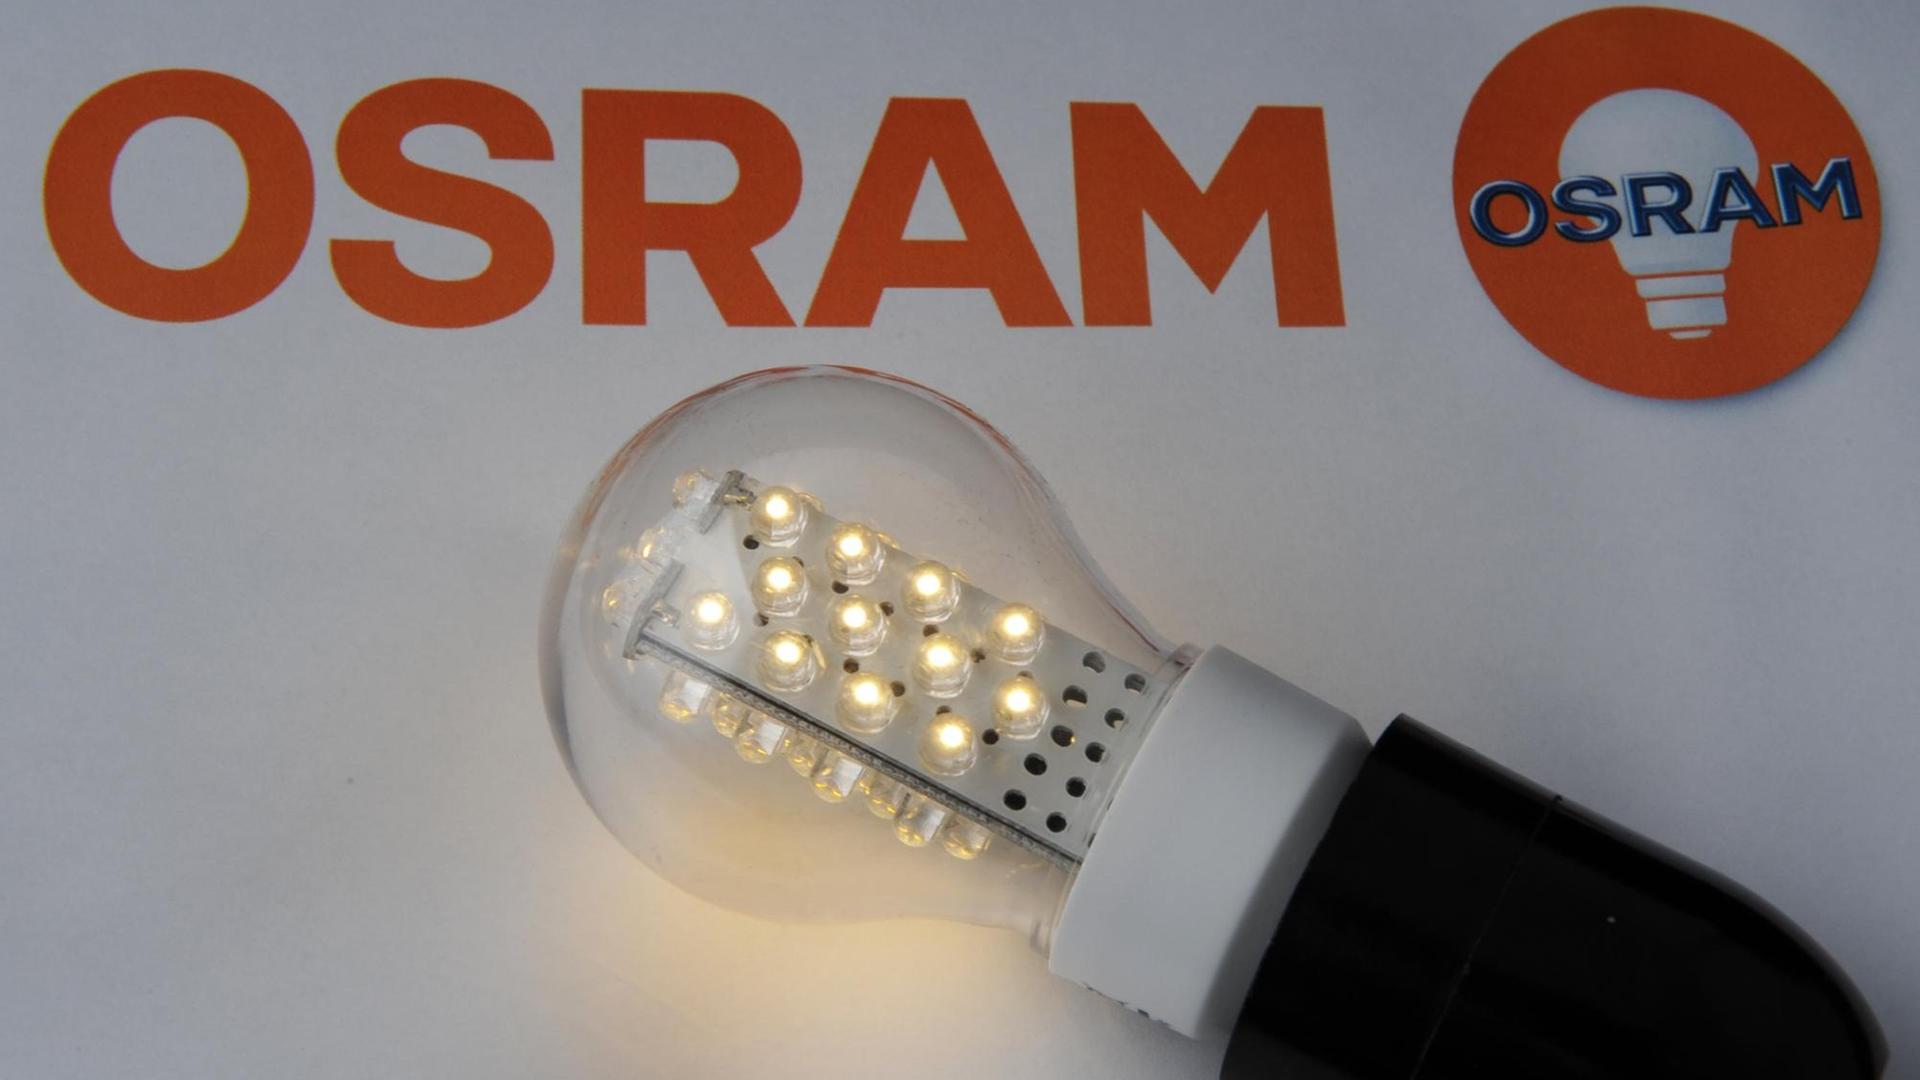 Eine LED-Lampe von Osram leuchtet am 29.03.2011 in Straubing (Bayern) vor dem Firmenschriftzug .